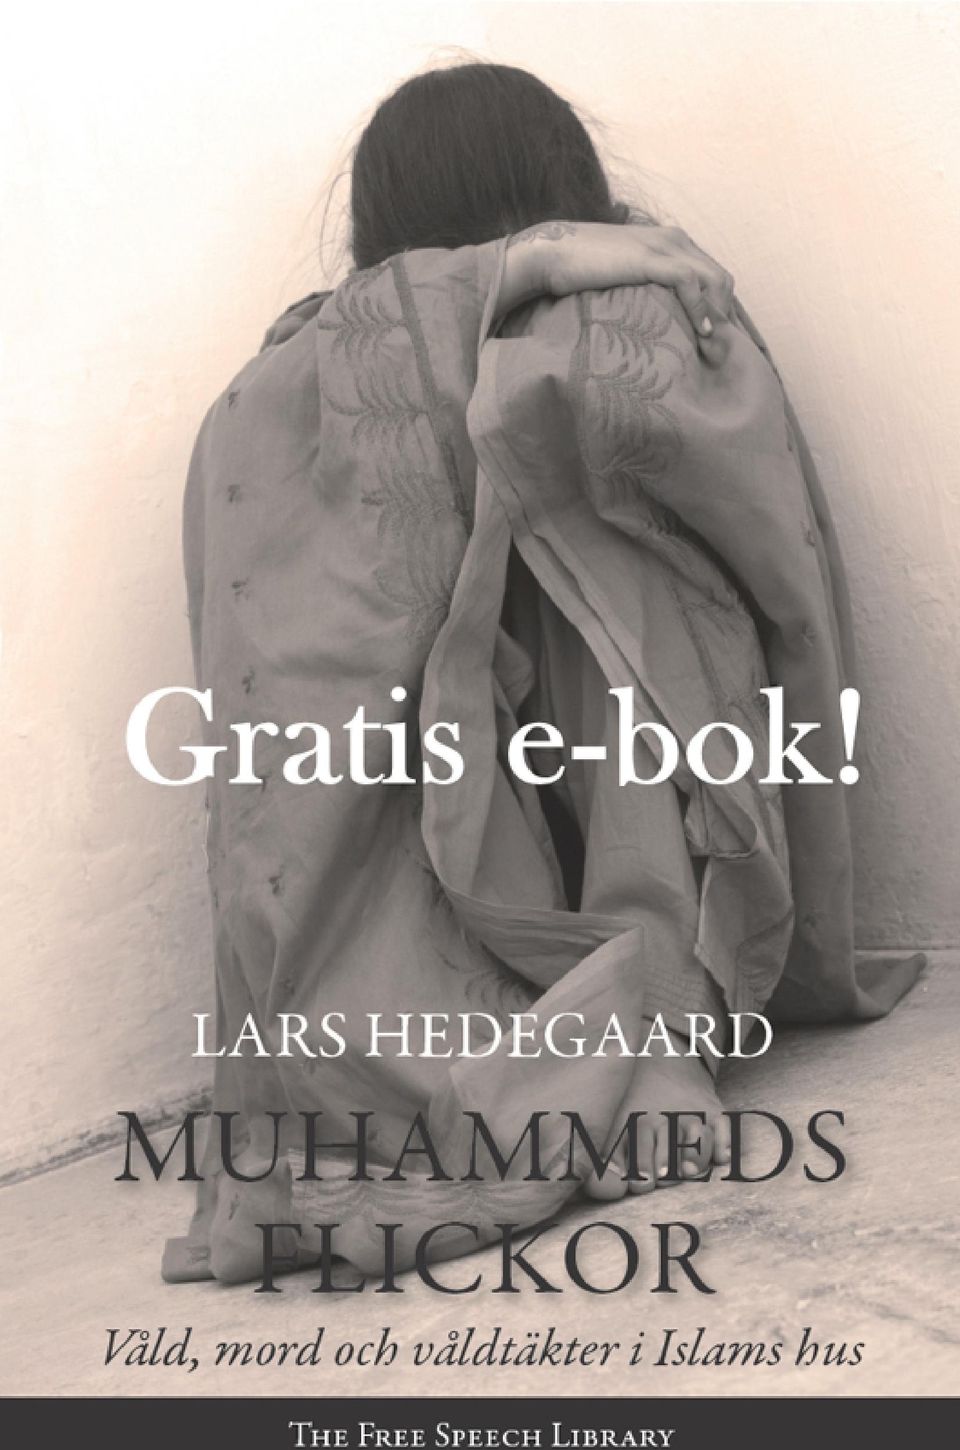 Av Lars Hedegaard har tidigare utgivits (urval) Foto bild